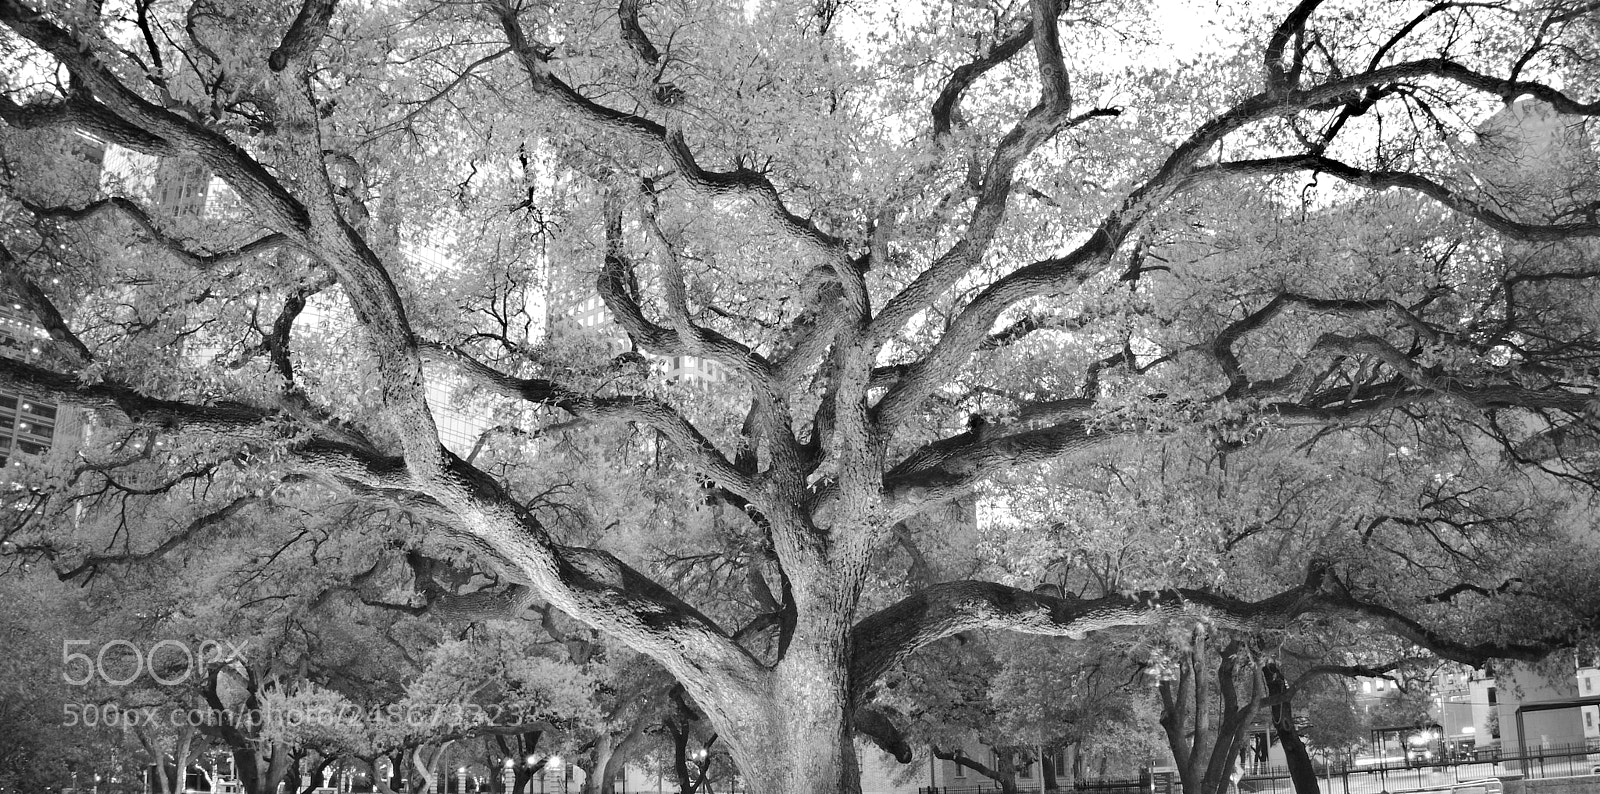 Sony a6300 sample photo. Tree photography